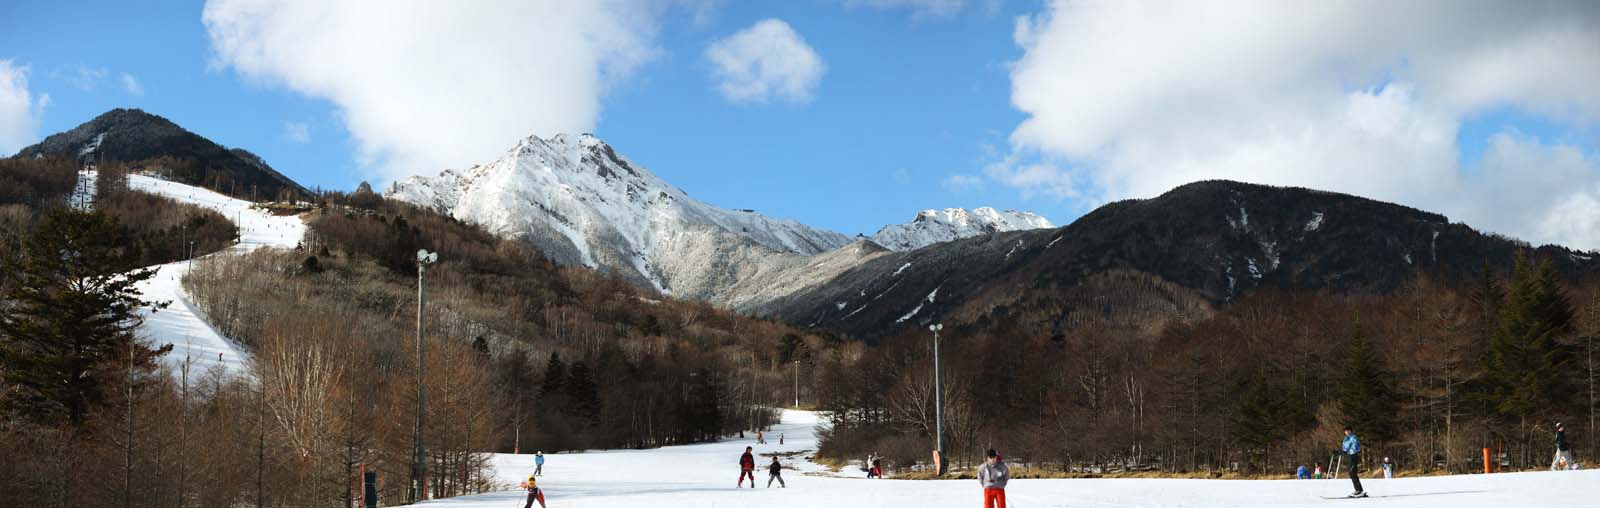 photo,material,free,landscape,picture,stock photo,Creative Commons,Yatsugatake, Yatsugatake, slope, ski, trail